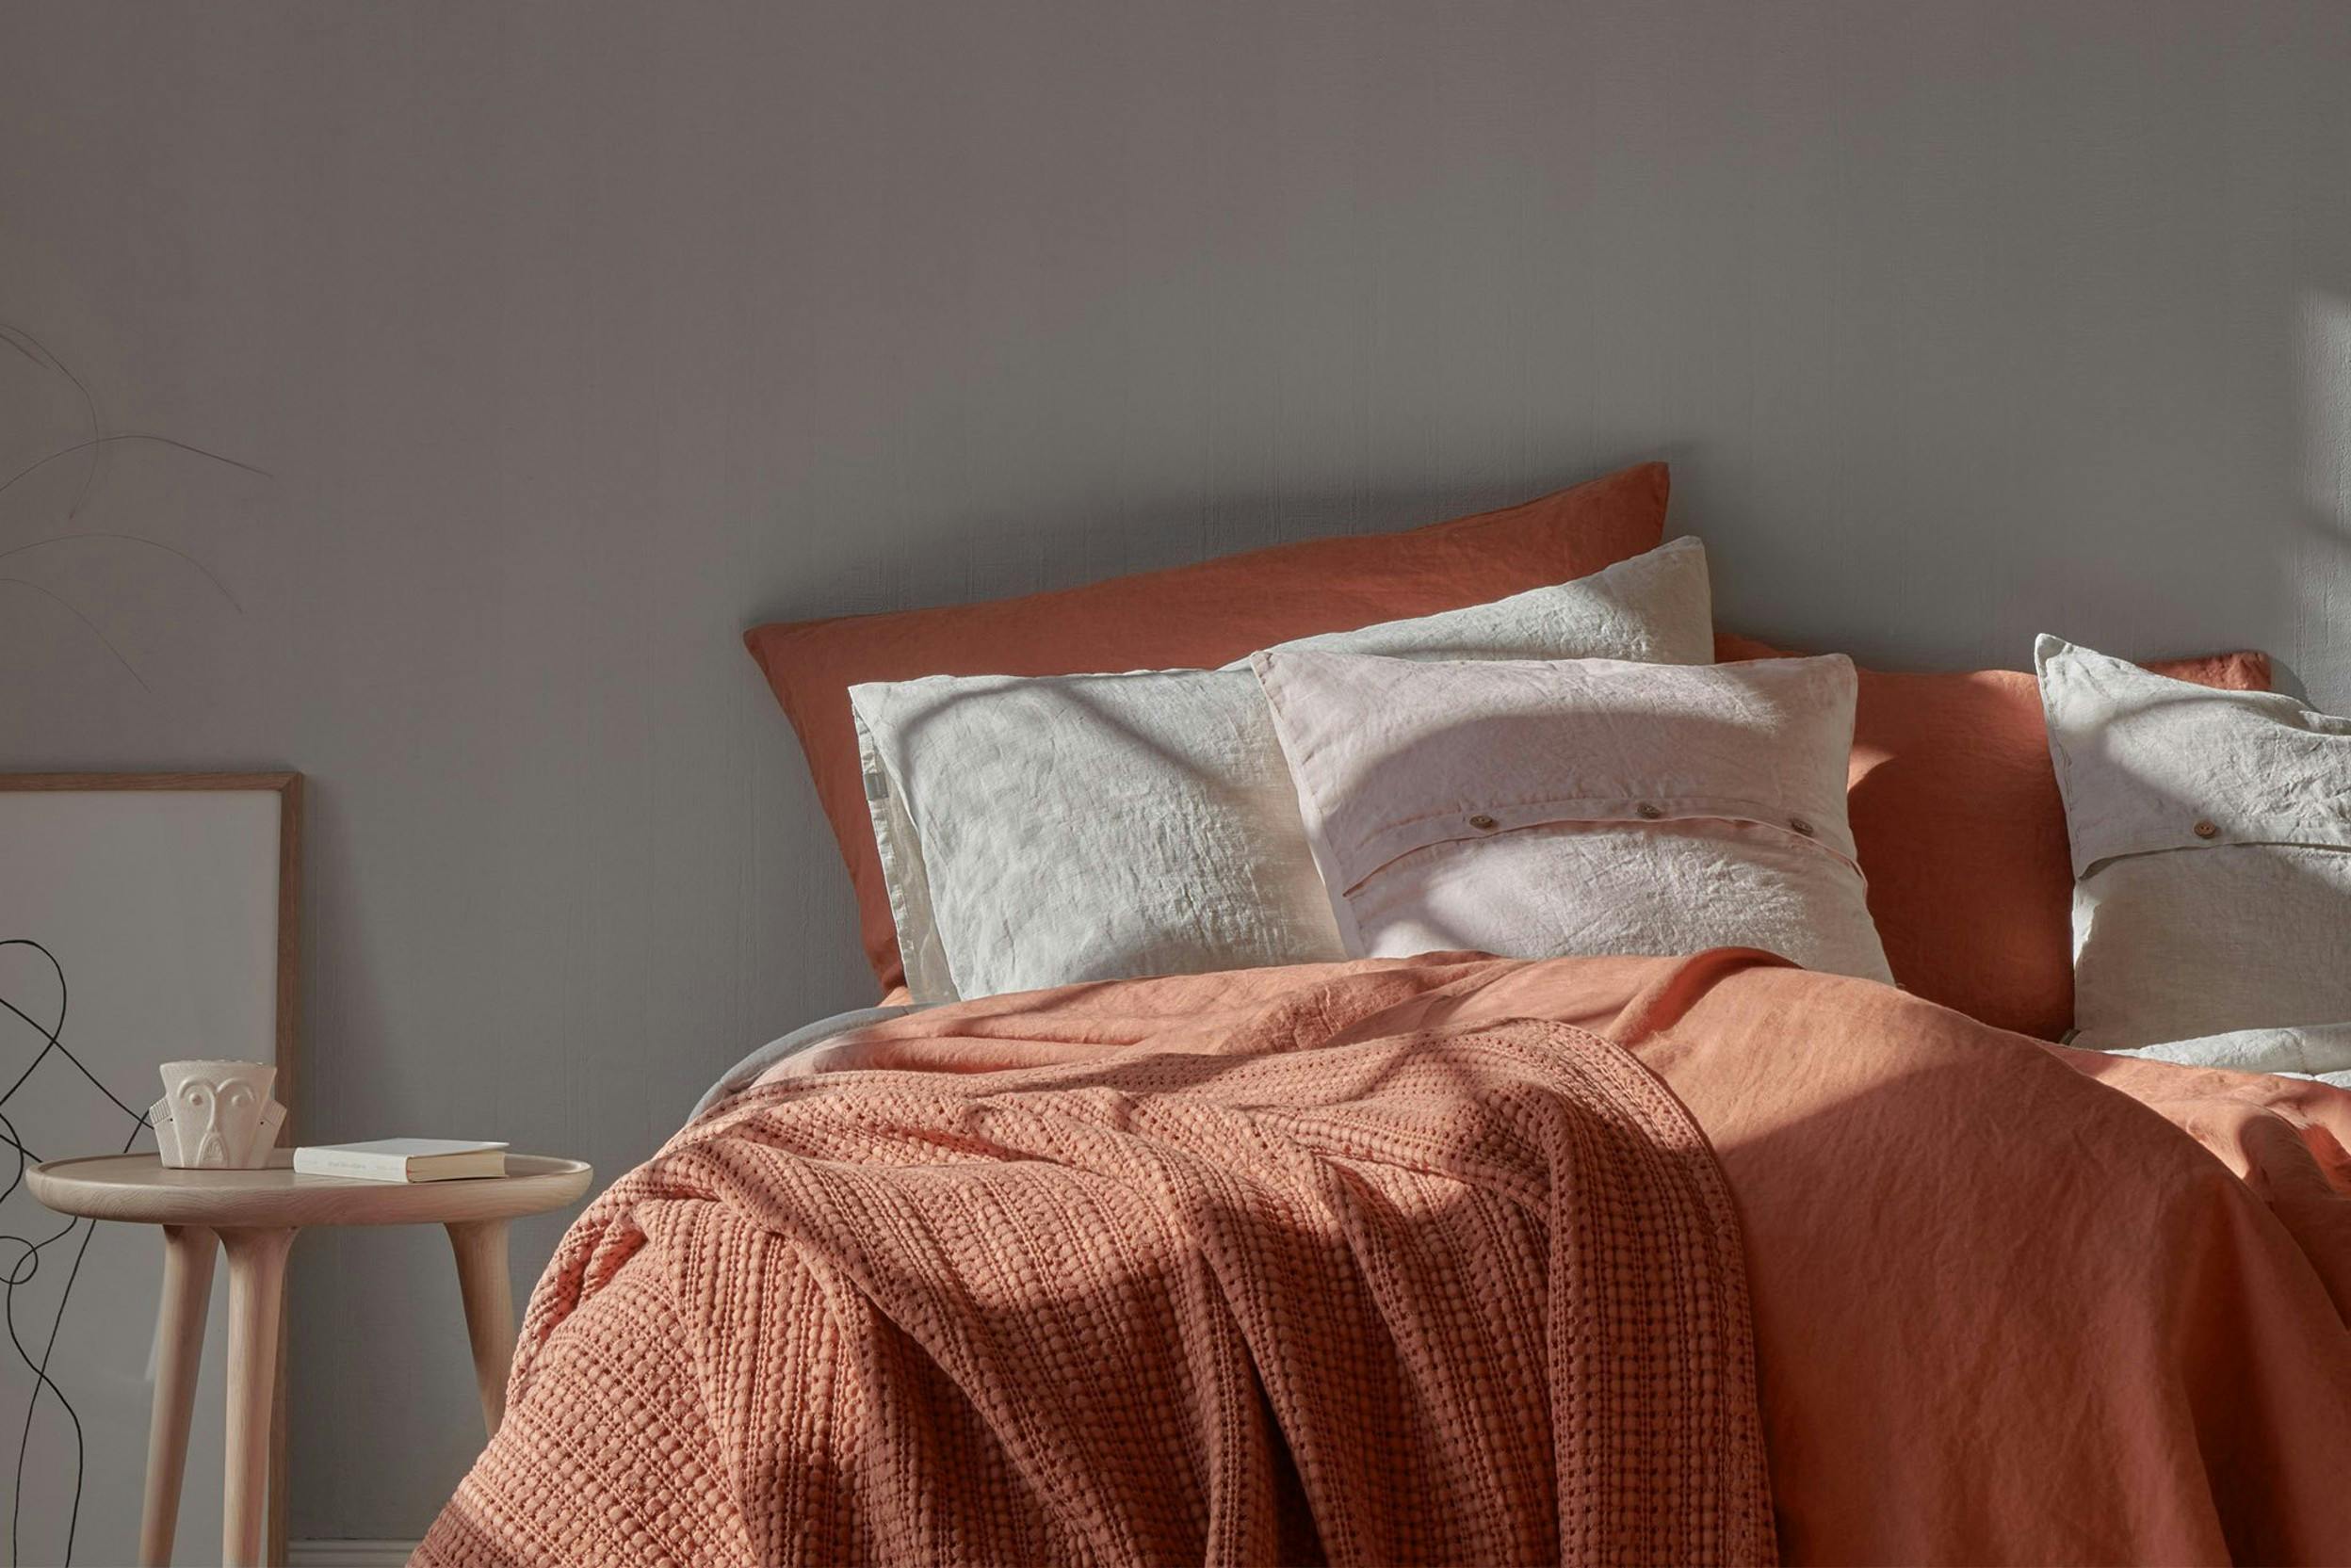 Bettwäsche aus ziegelrotem Leinen, dekoriert mit beigen und rosa Kissen